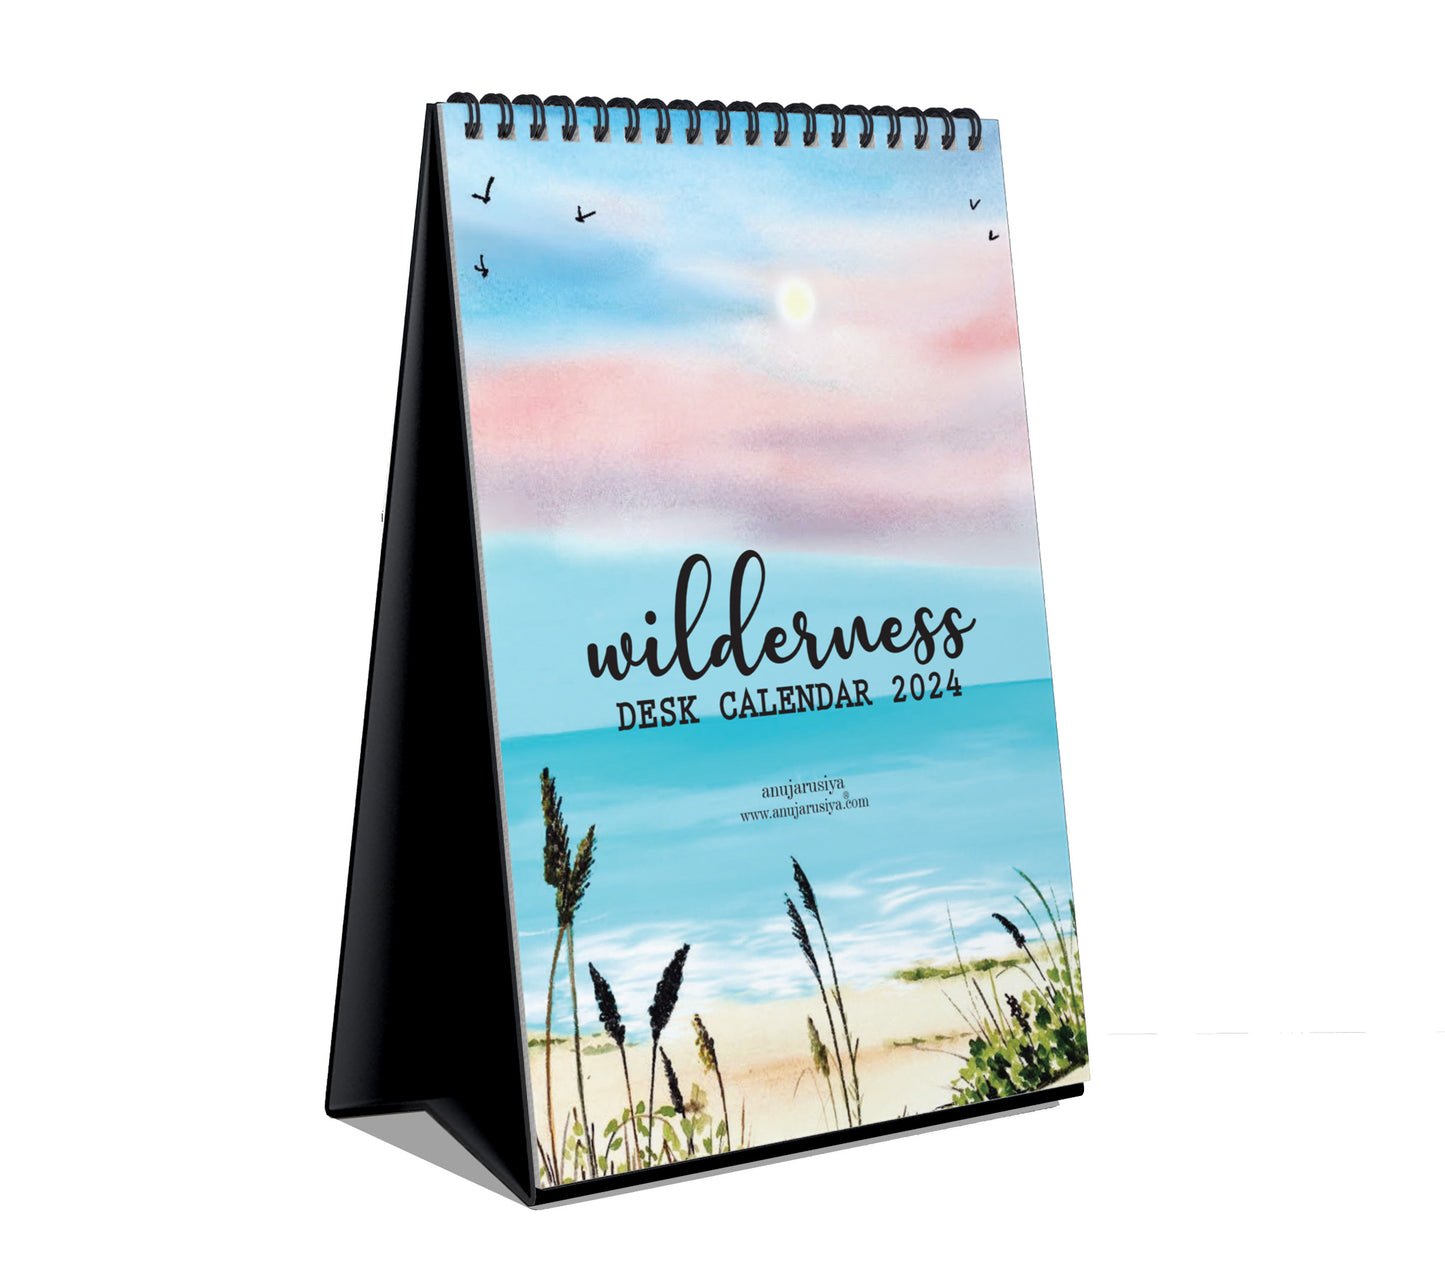 Wilderness Desk Calendar 2024